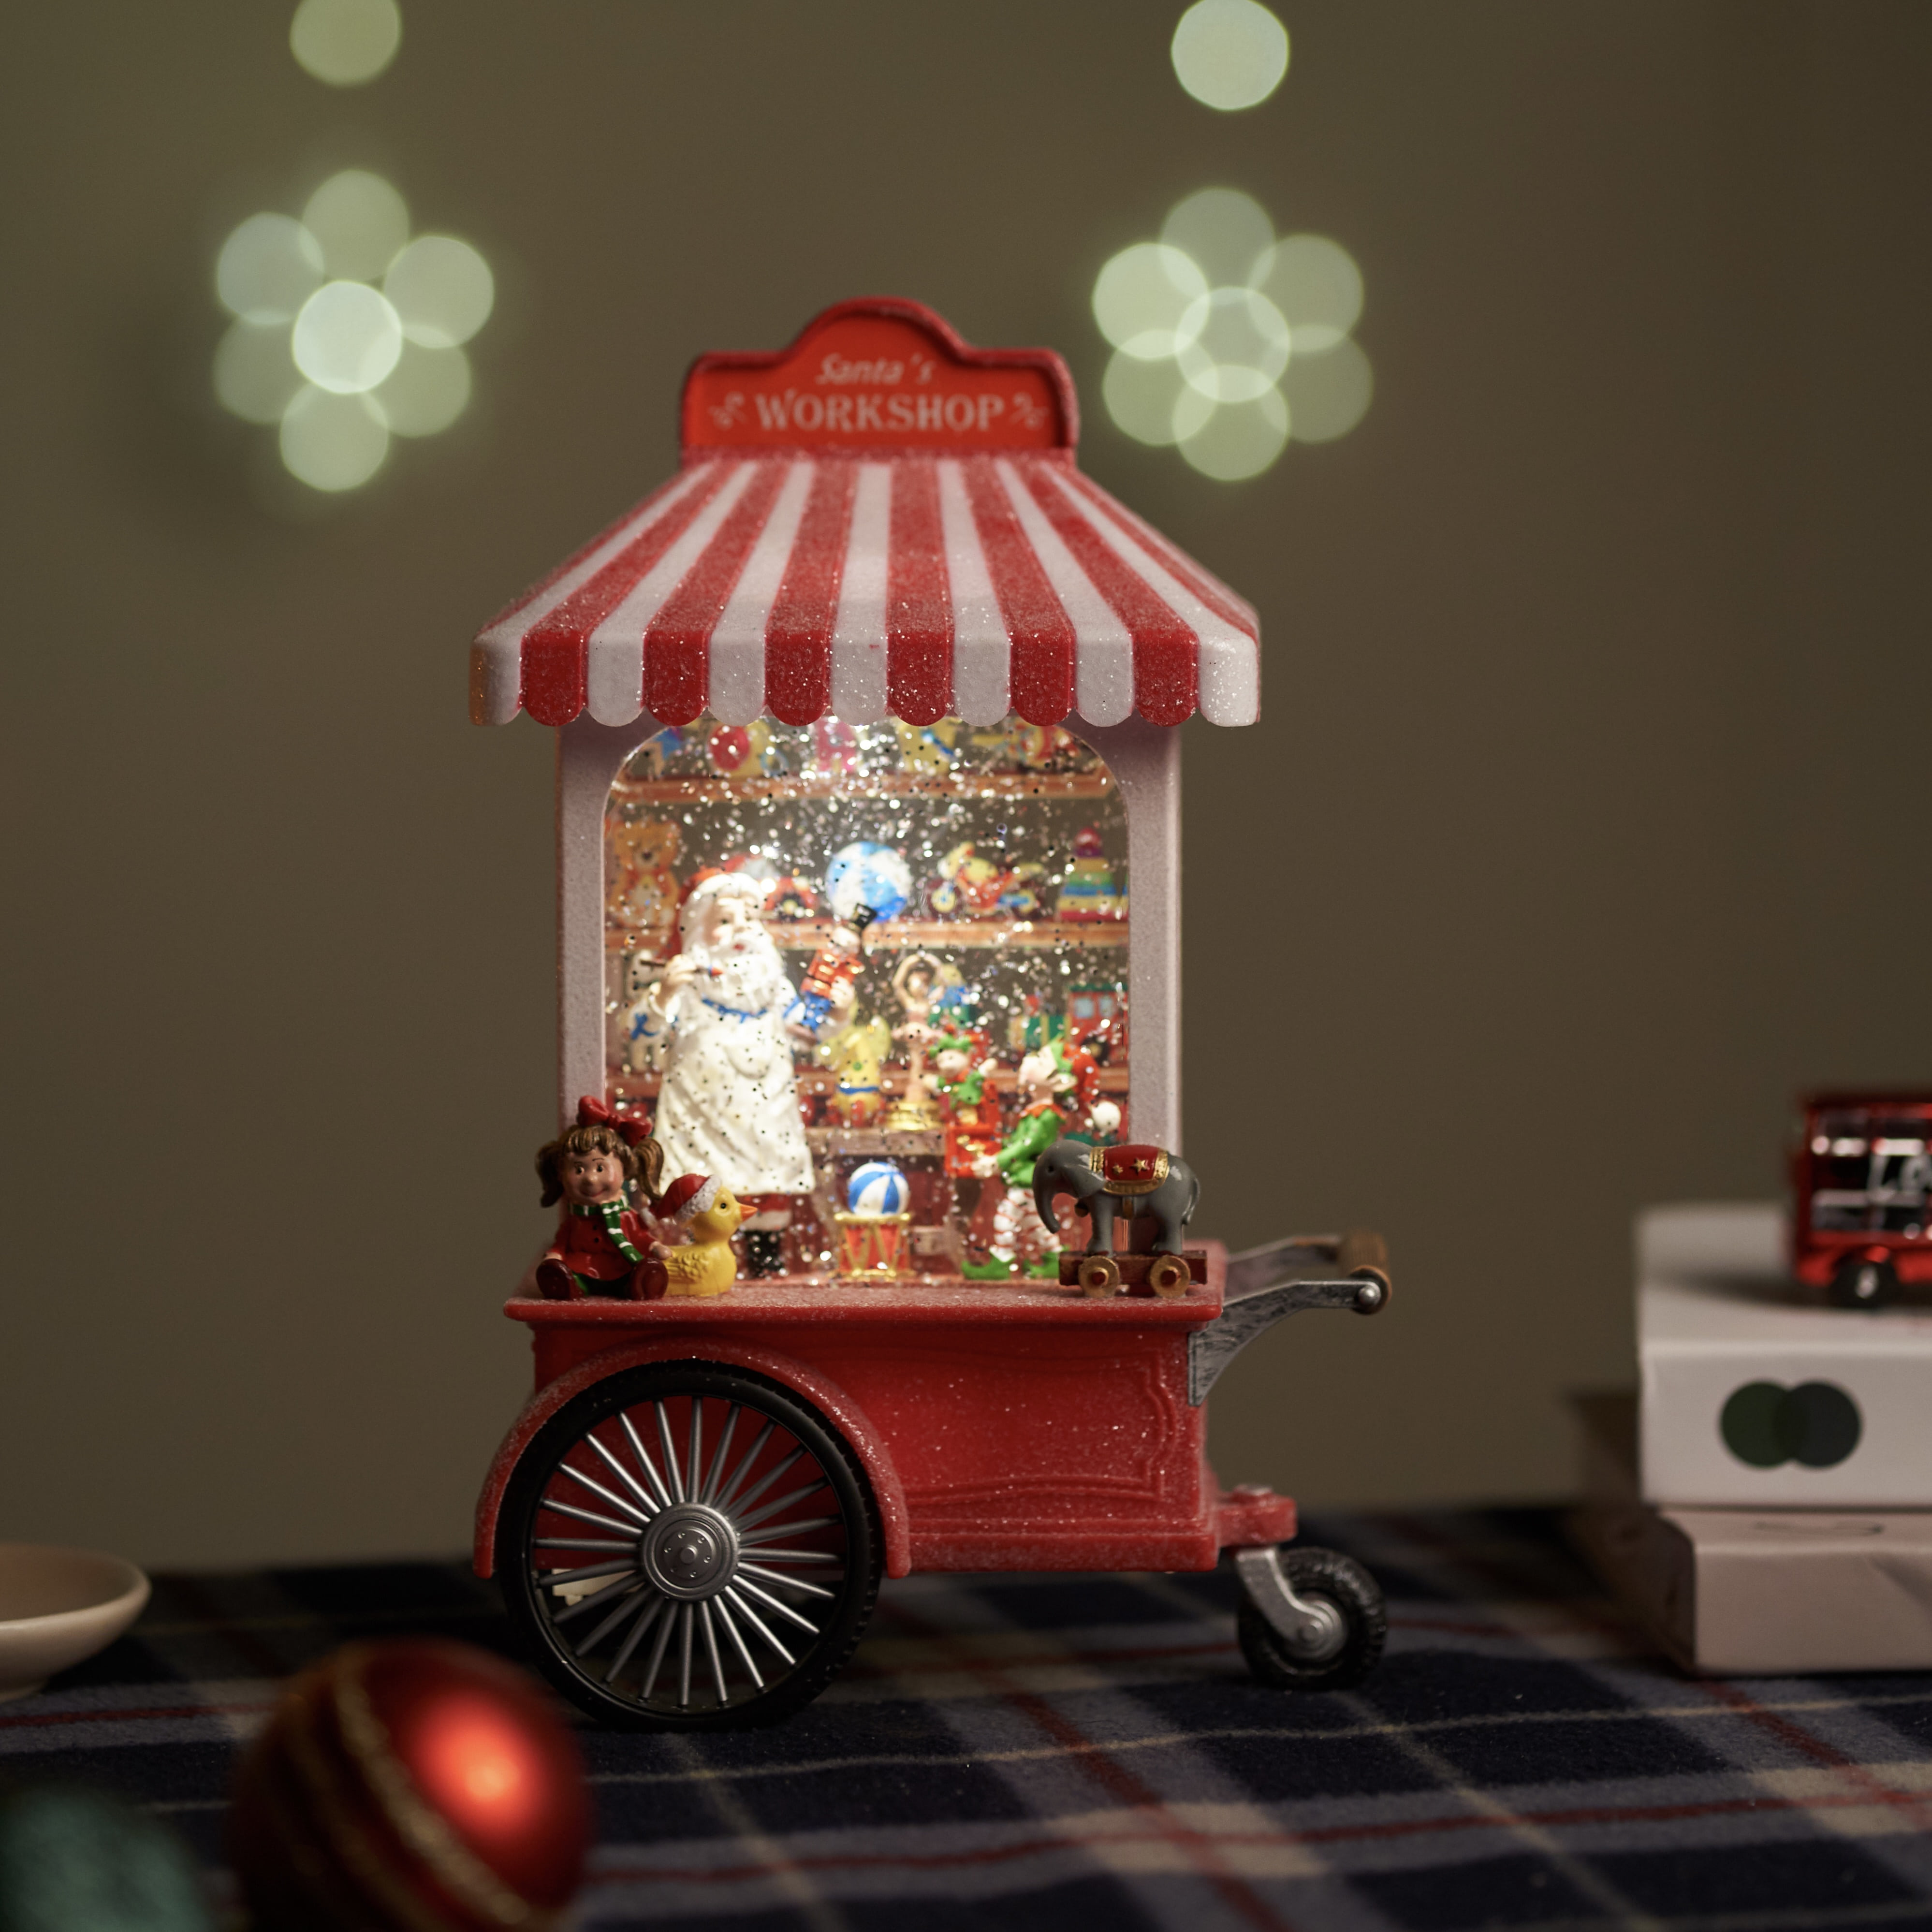 크리스마스 산타 워크샵 장난감가게 오르골 워터볼 LED 조명 인테리어소품 선물